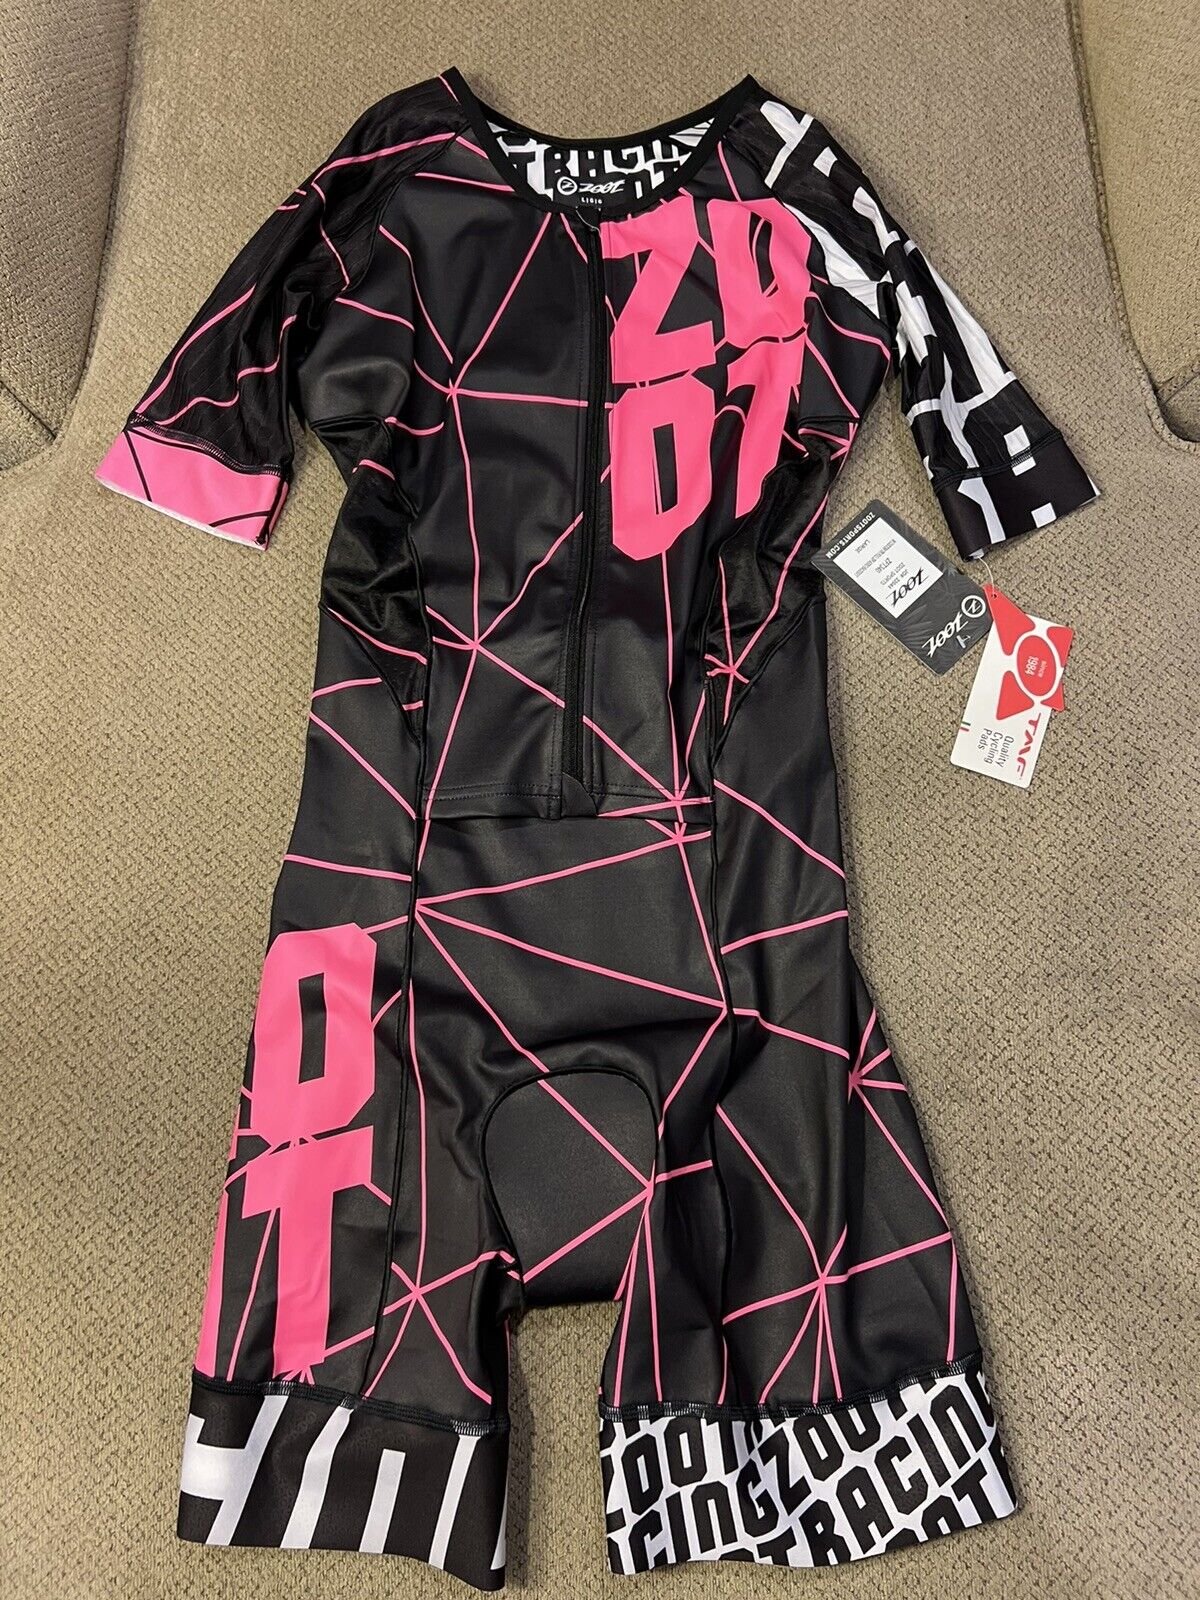 Womens Zoot Triathlon Tri Suit New Aero pink Black Race Suit XL